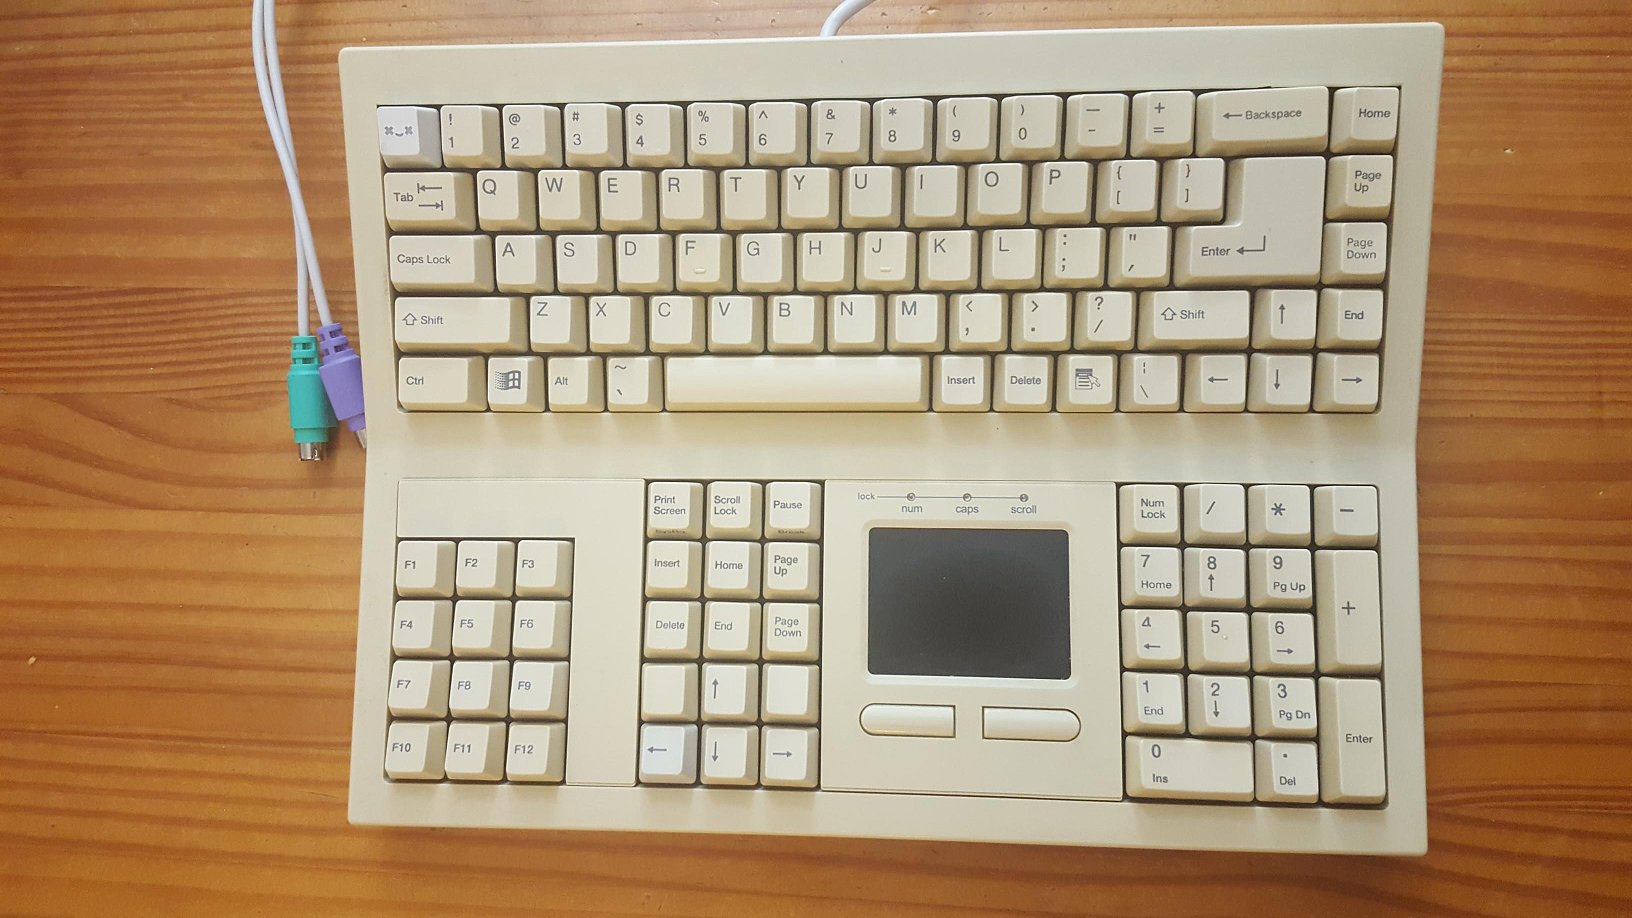 DSI financial keyboard KB-8861-s